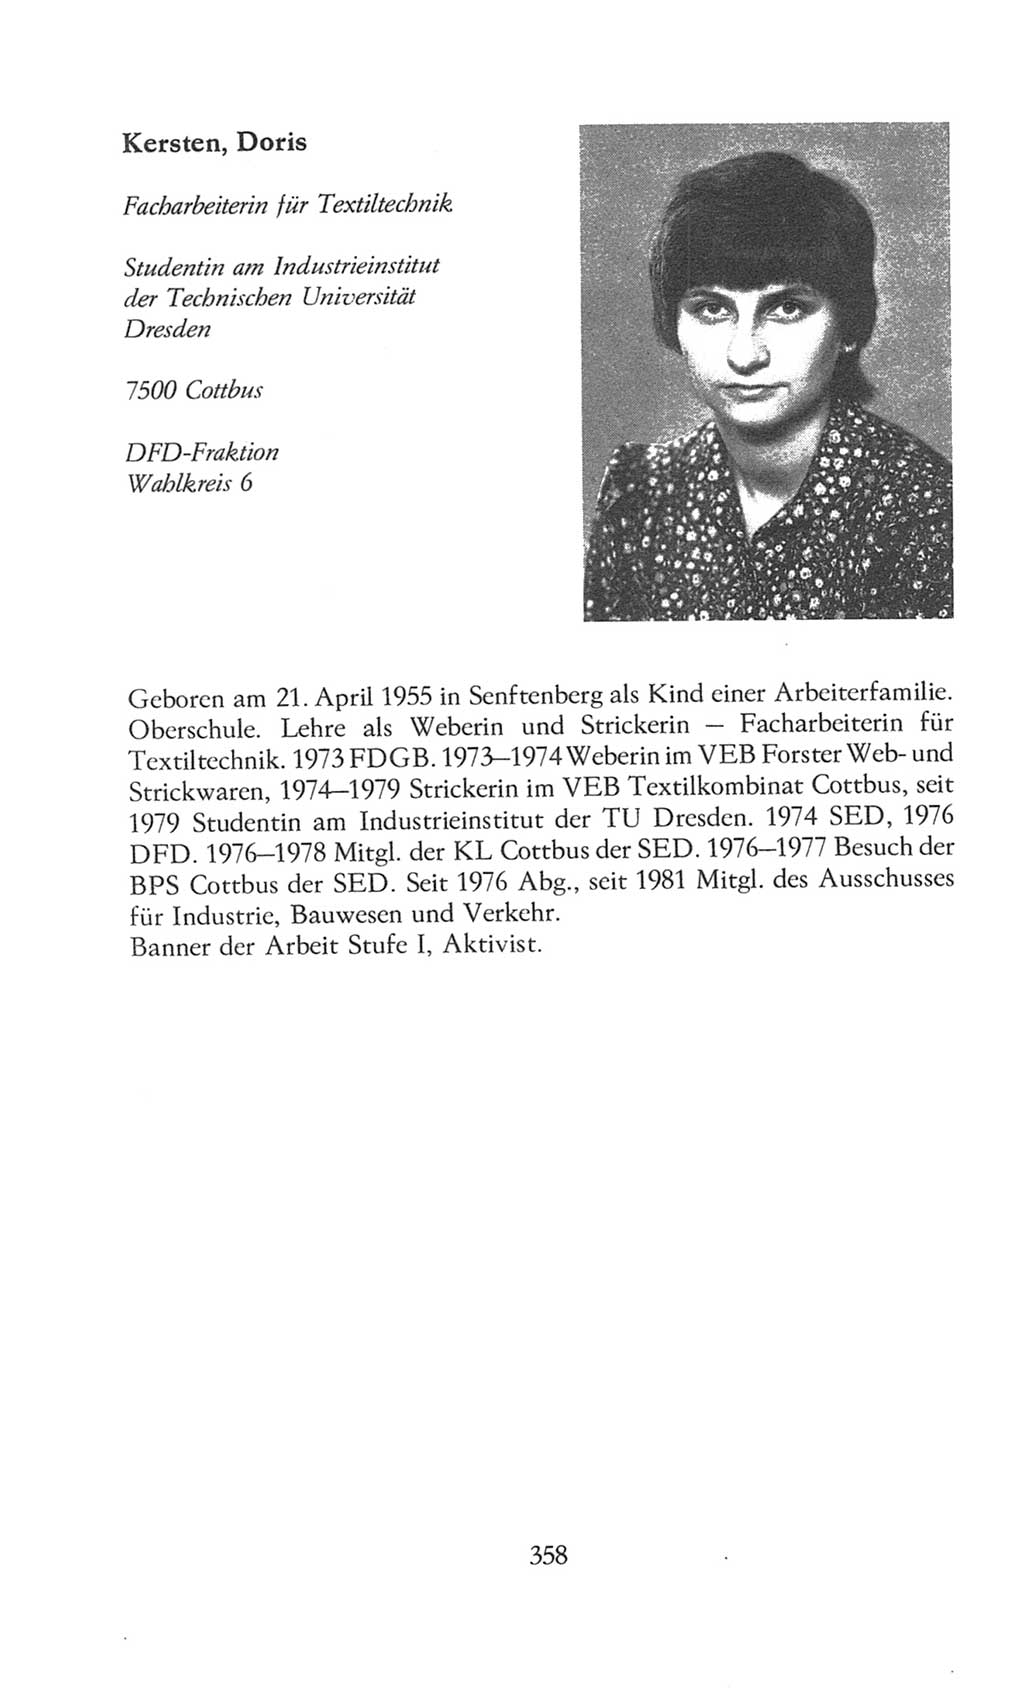 Volkskammer (VK) der Deutschen Demokratischen Republik (DDR), 8. Wahlperiode 1981-1986, Seite 358 (VK. DDR 8. WP. 1981-1986, S. 358)